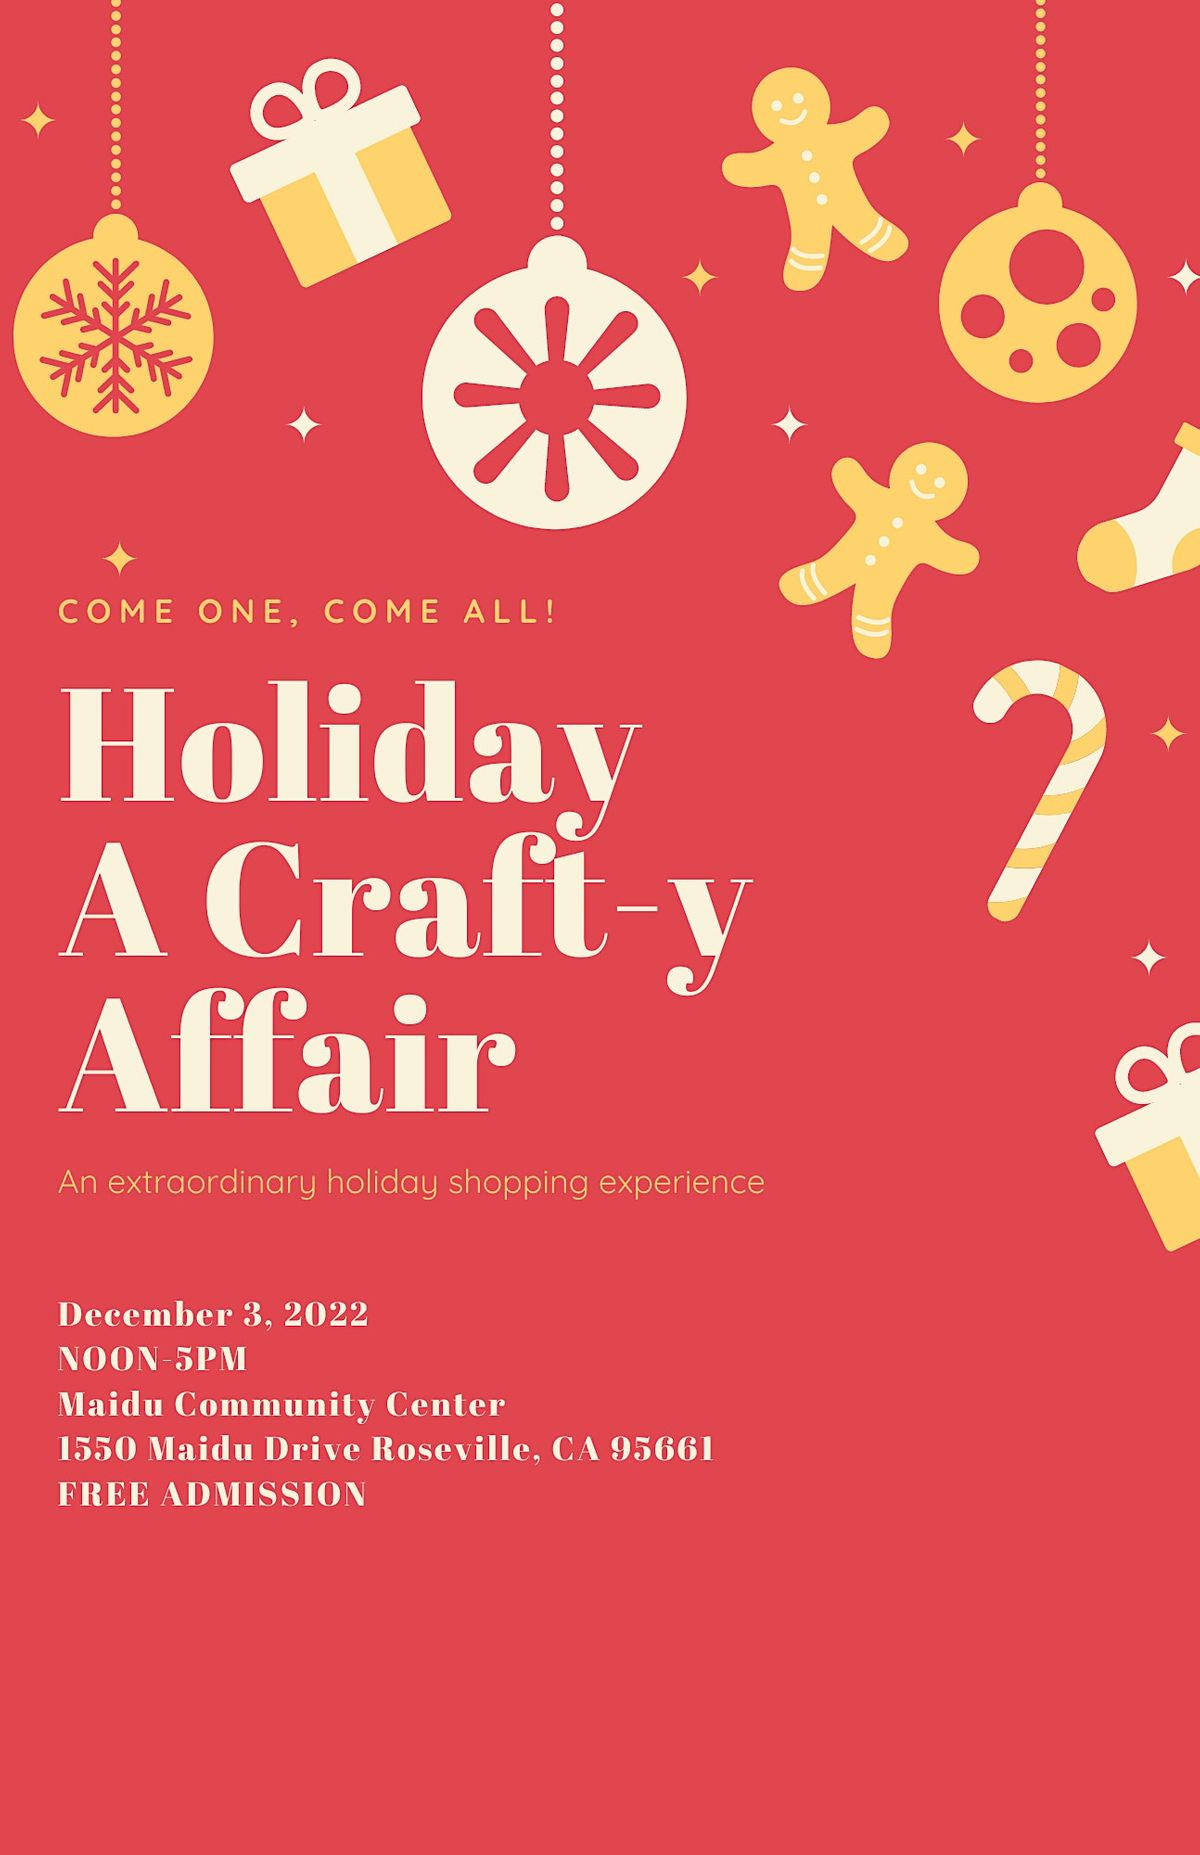 Holiday Craft Fair Maidu Community Center, Roseville, CA December 3